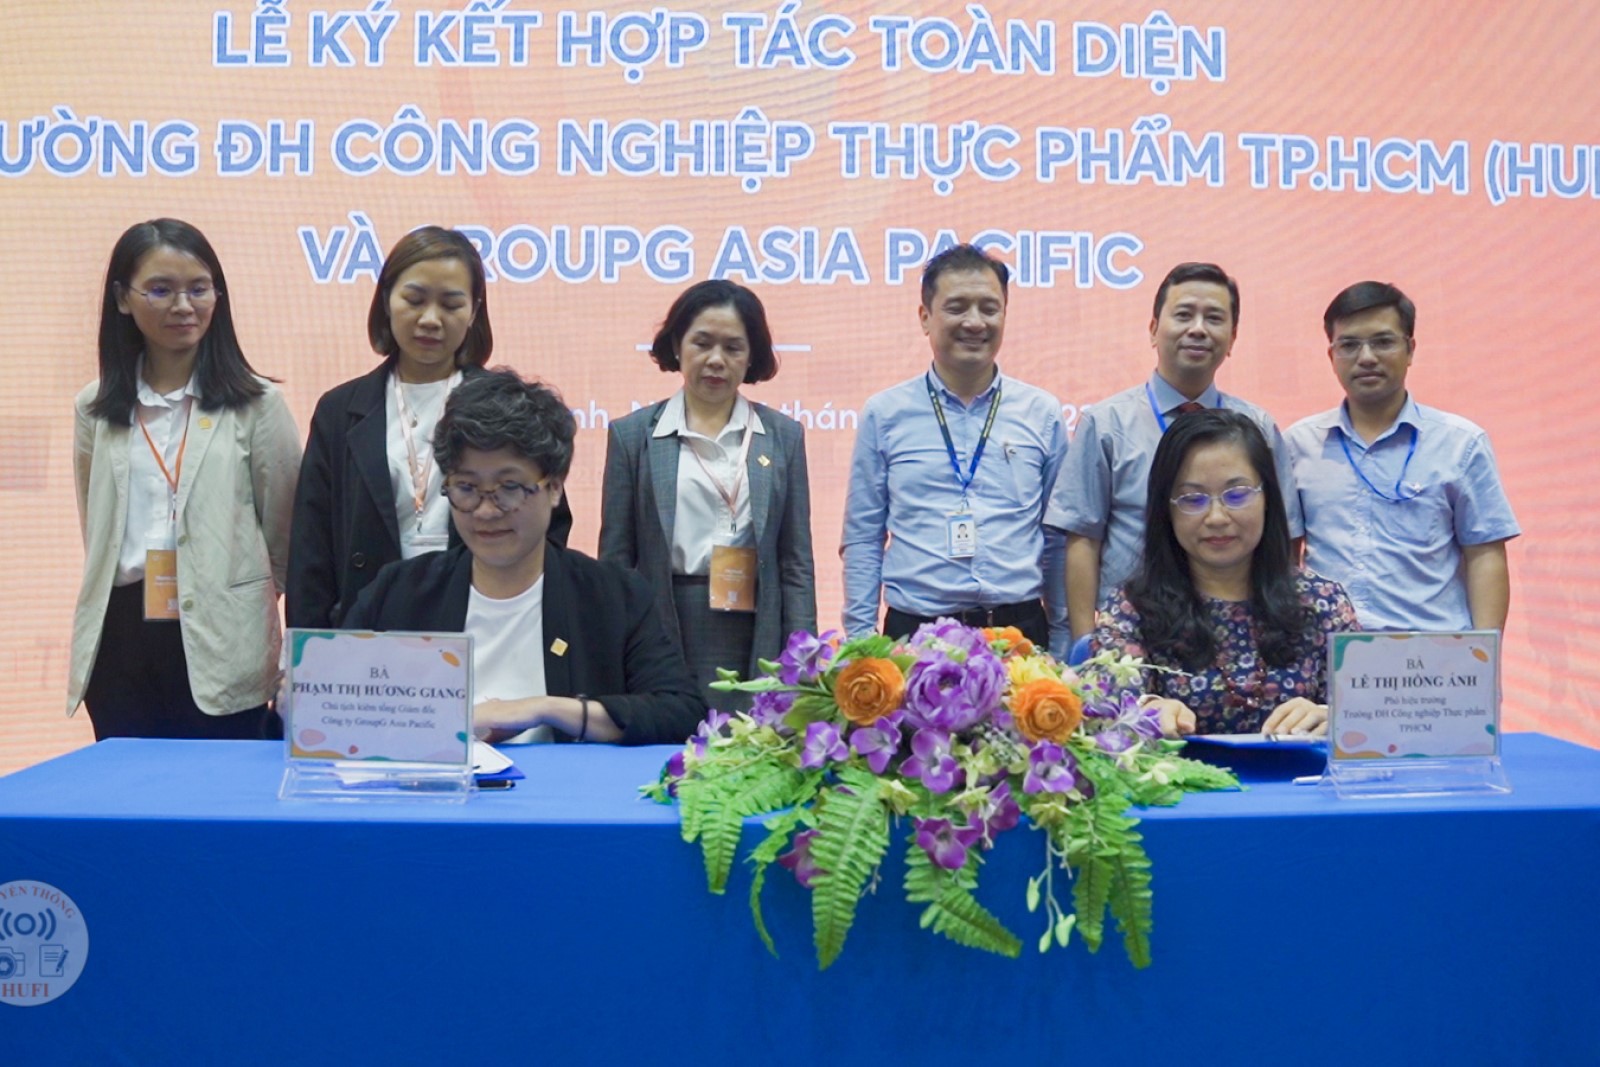 GroupG Asia Pacific ký hợp tác toàn diện về Đổi mới Sáng tạo với trường ĐH Công nghiệp Thực phẩm TP.HCM